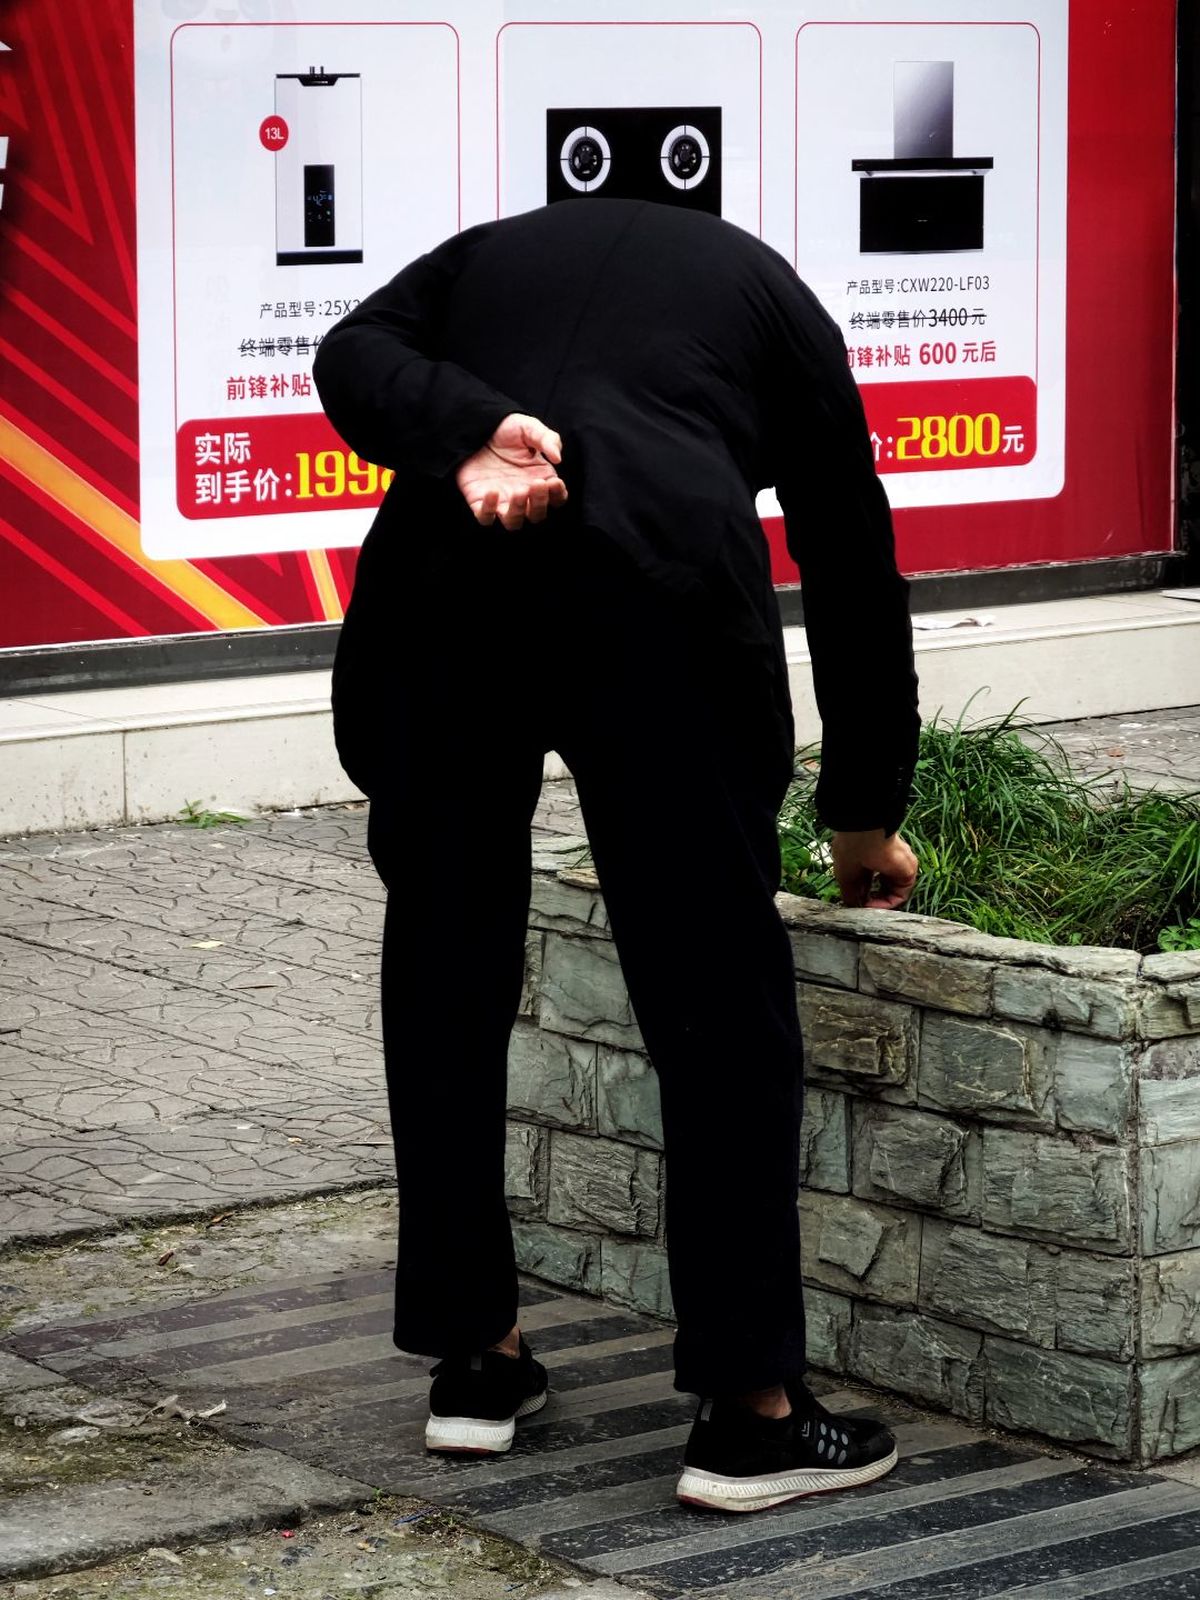 一个穿黑色西装的男人靠在墙上看着人行道上的一块告示牌